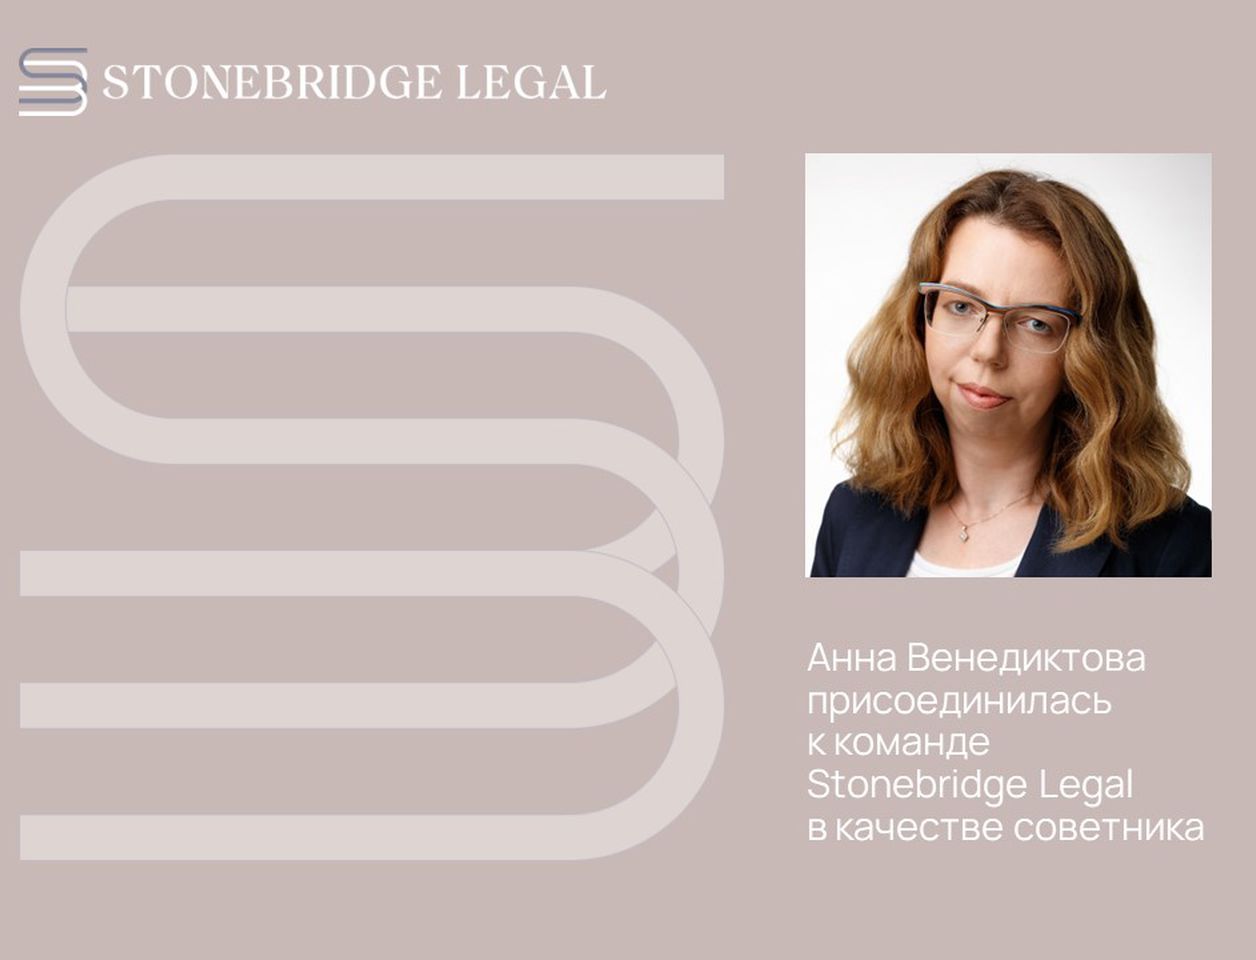 Stonebridge Legal объявляет об усилении направлений M&A и проектного финансирования